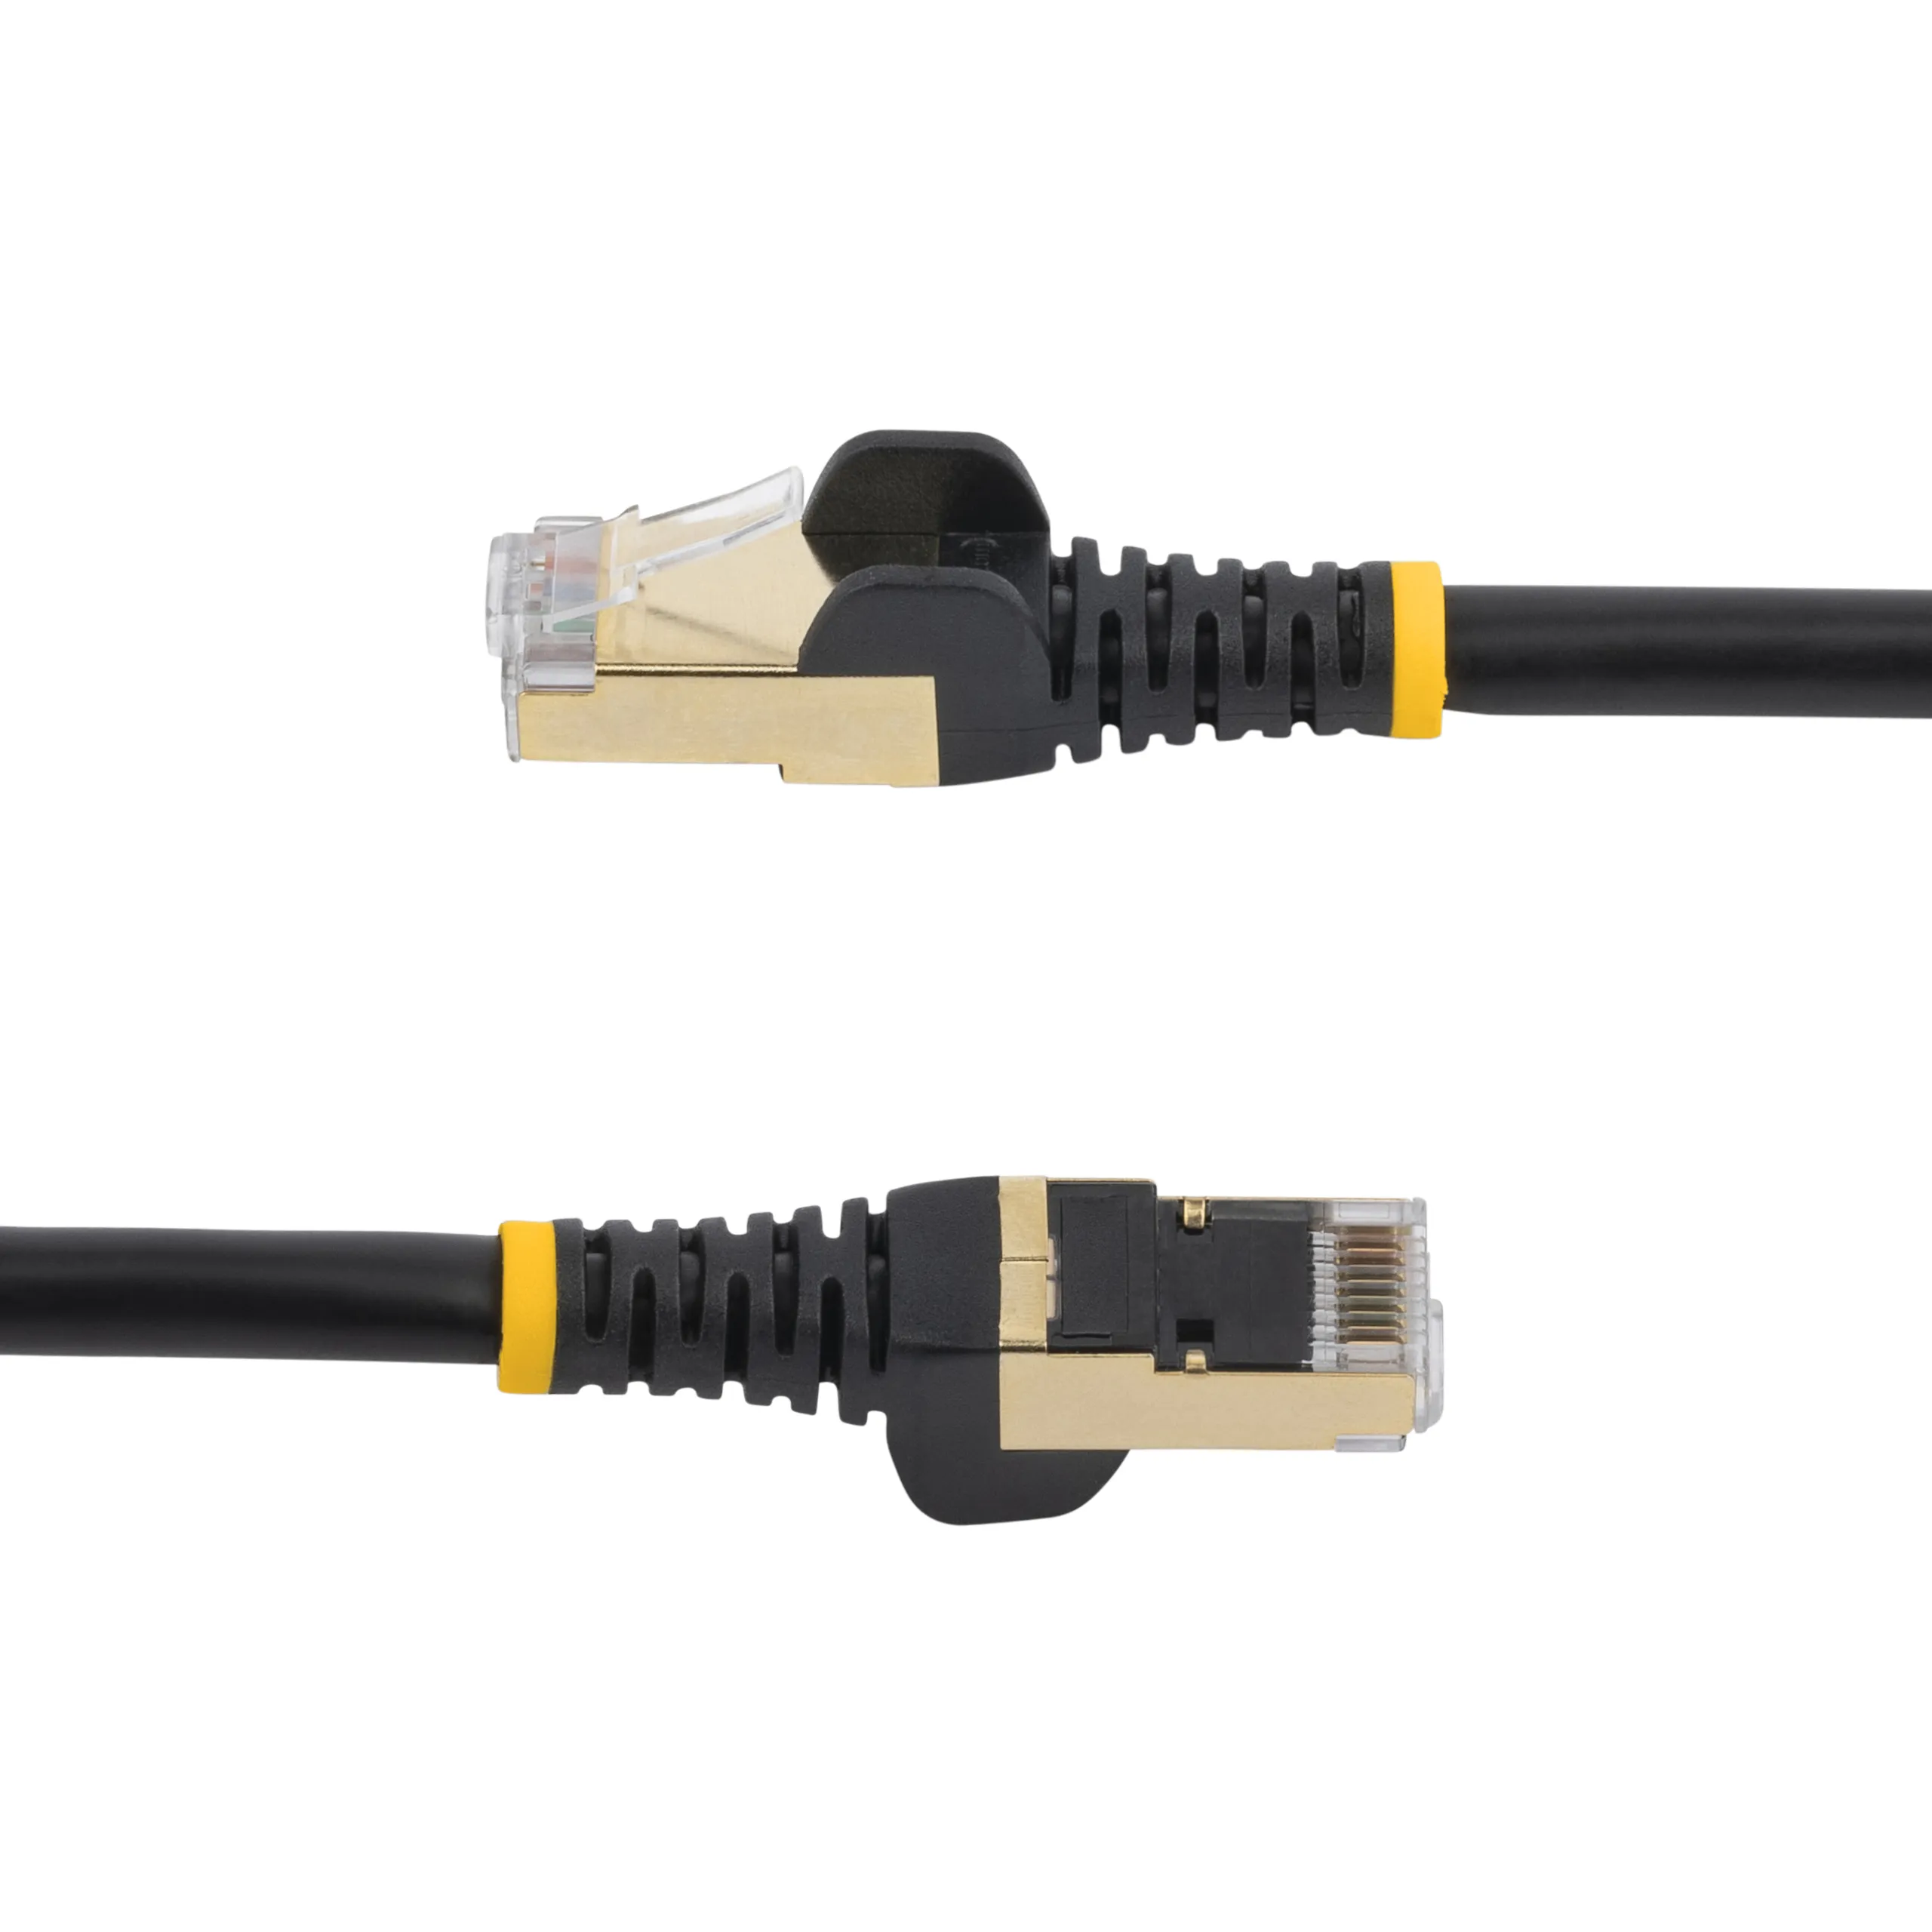 Achat StarTech.com Câble réseau Ethernet RJ45 Cat6 de 7 sur hello RSE - visuel 5